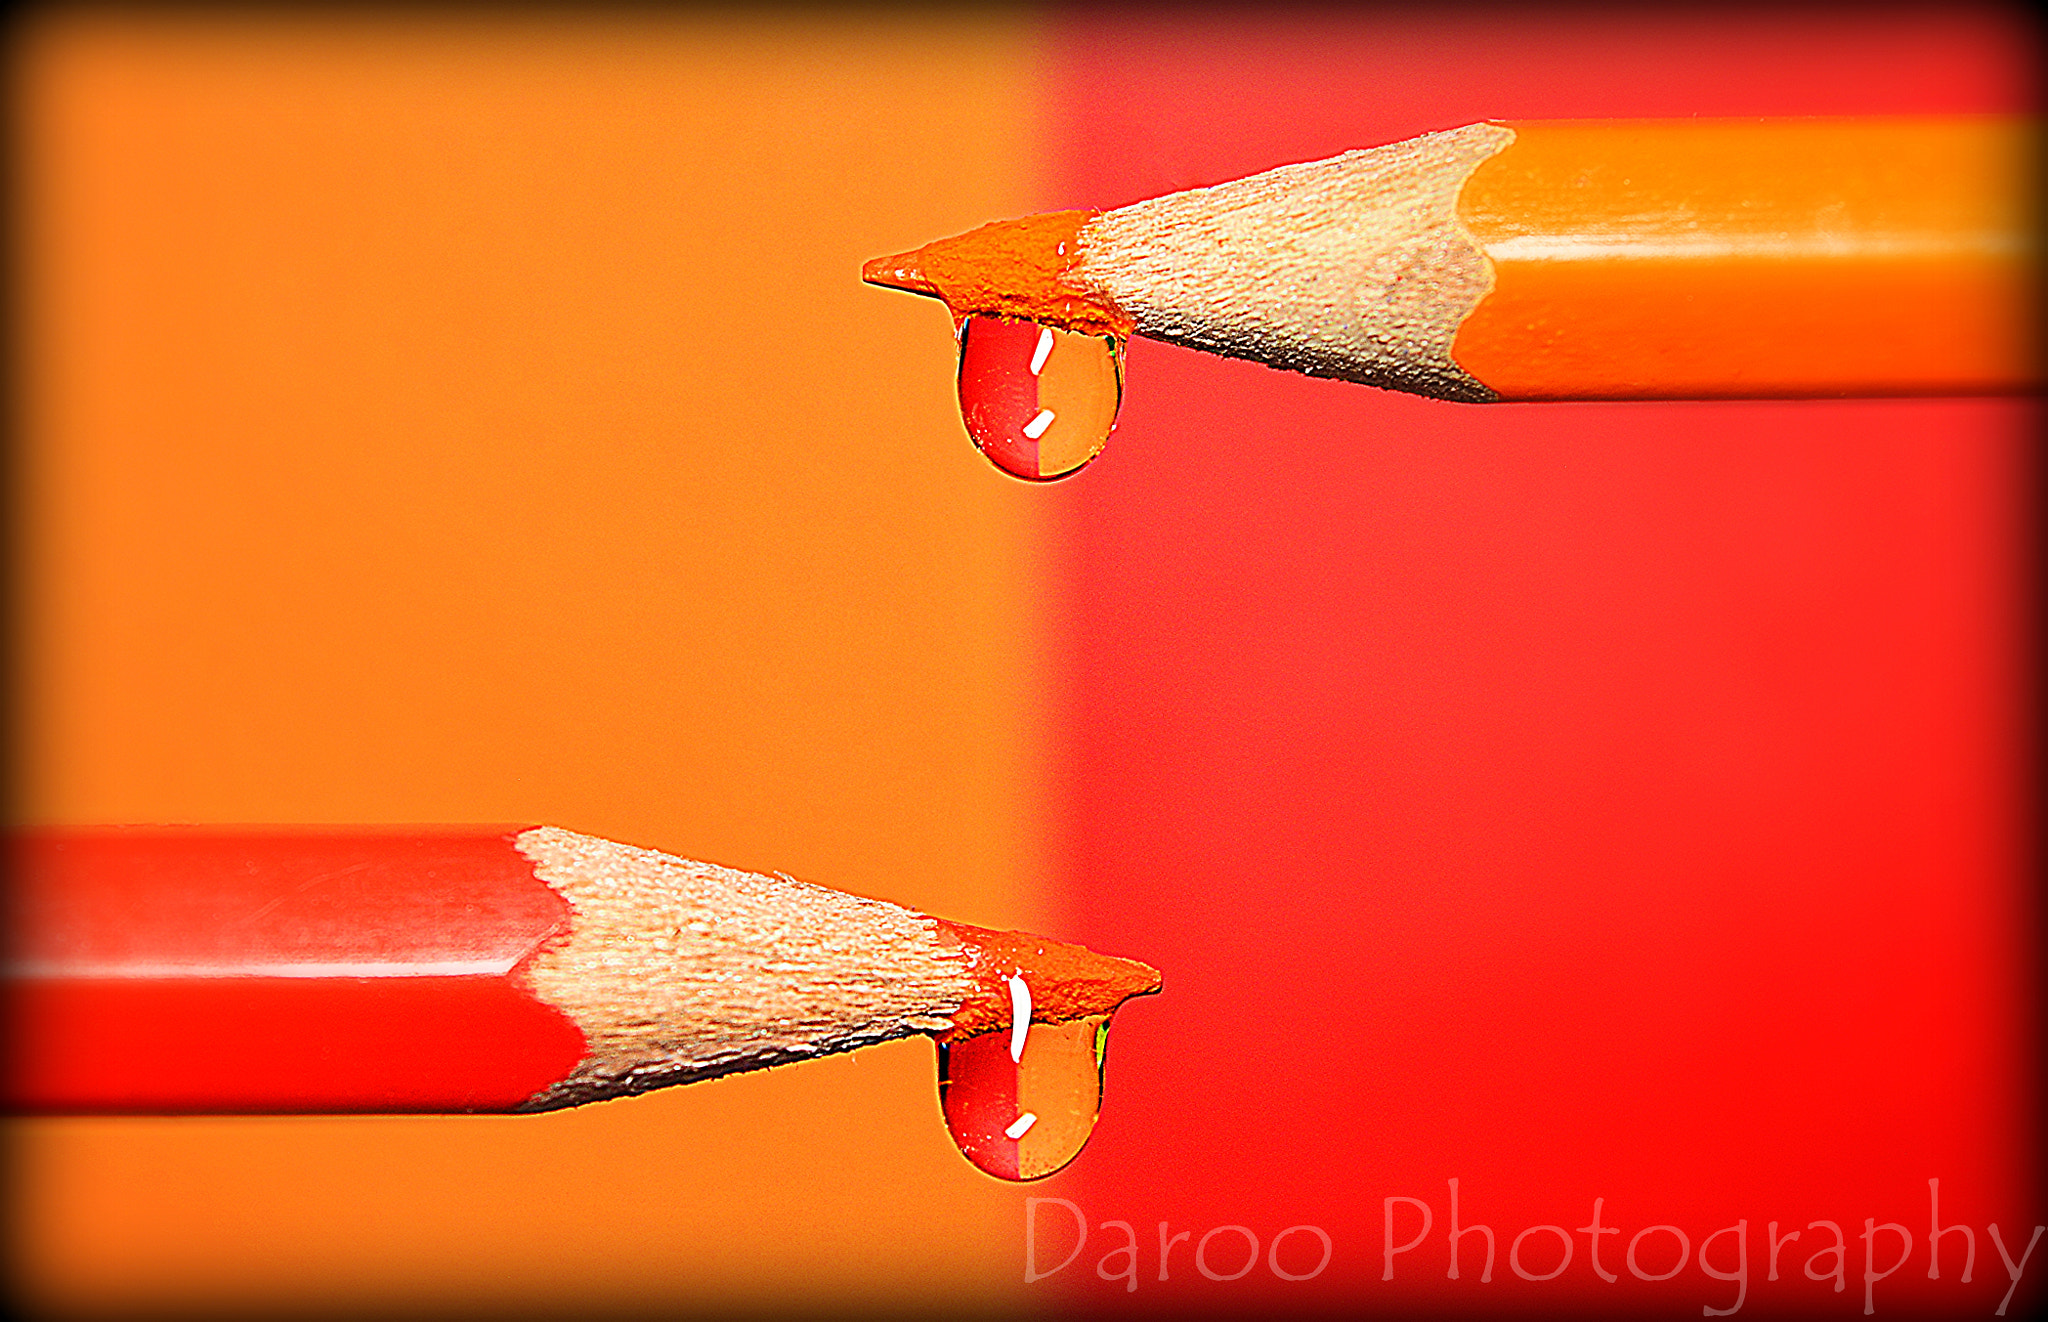 Nikon D5200 + AF-S Zoom-Nikkor 24-85mm f/3.5-4.5G IF-ED sample photo. Rojo y naranja - red and orange photography